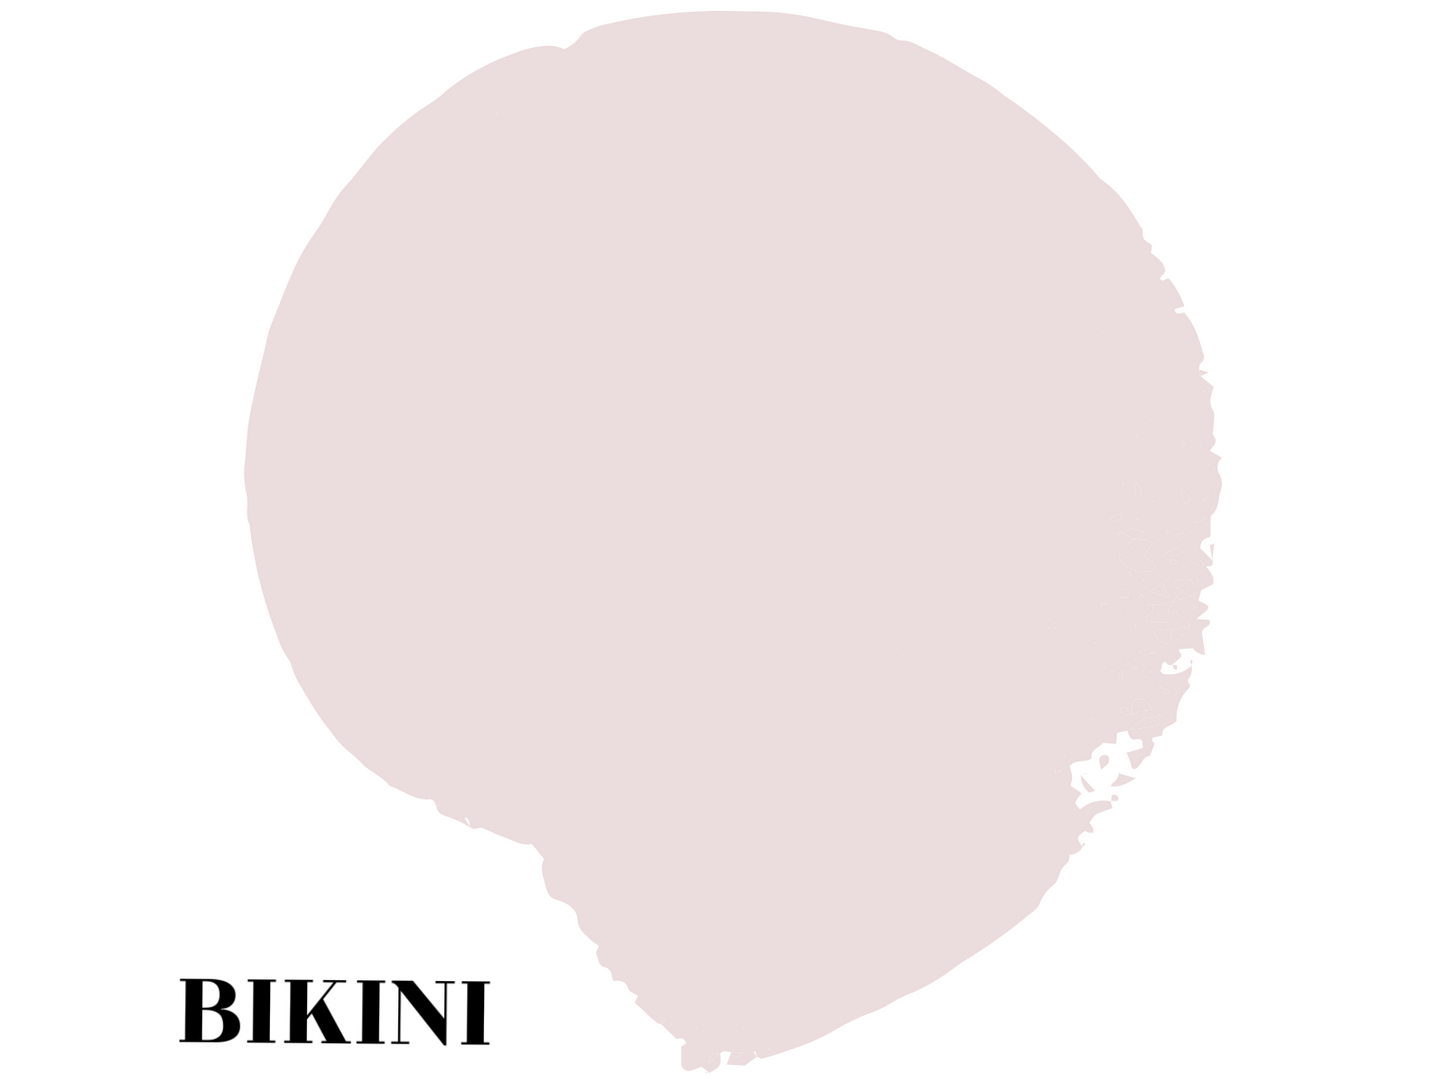 Mineral Paint-Bikini